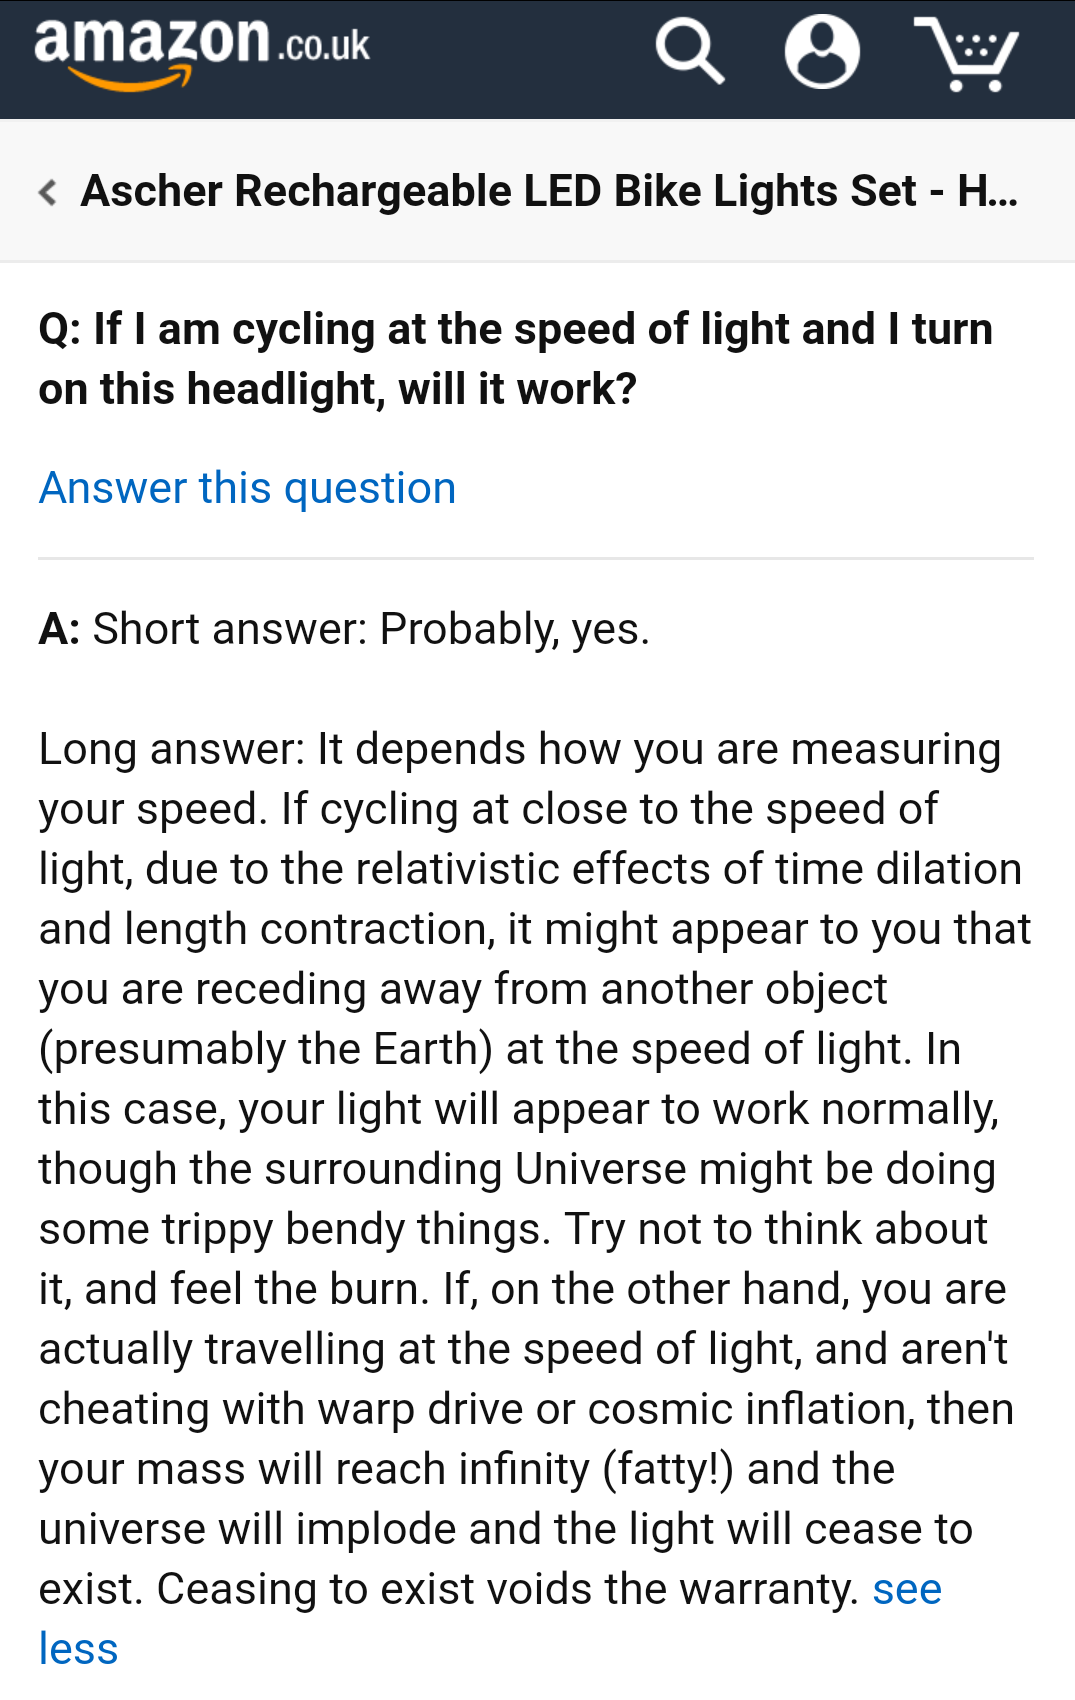 Buying bike lights on Amazon